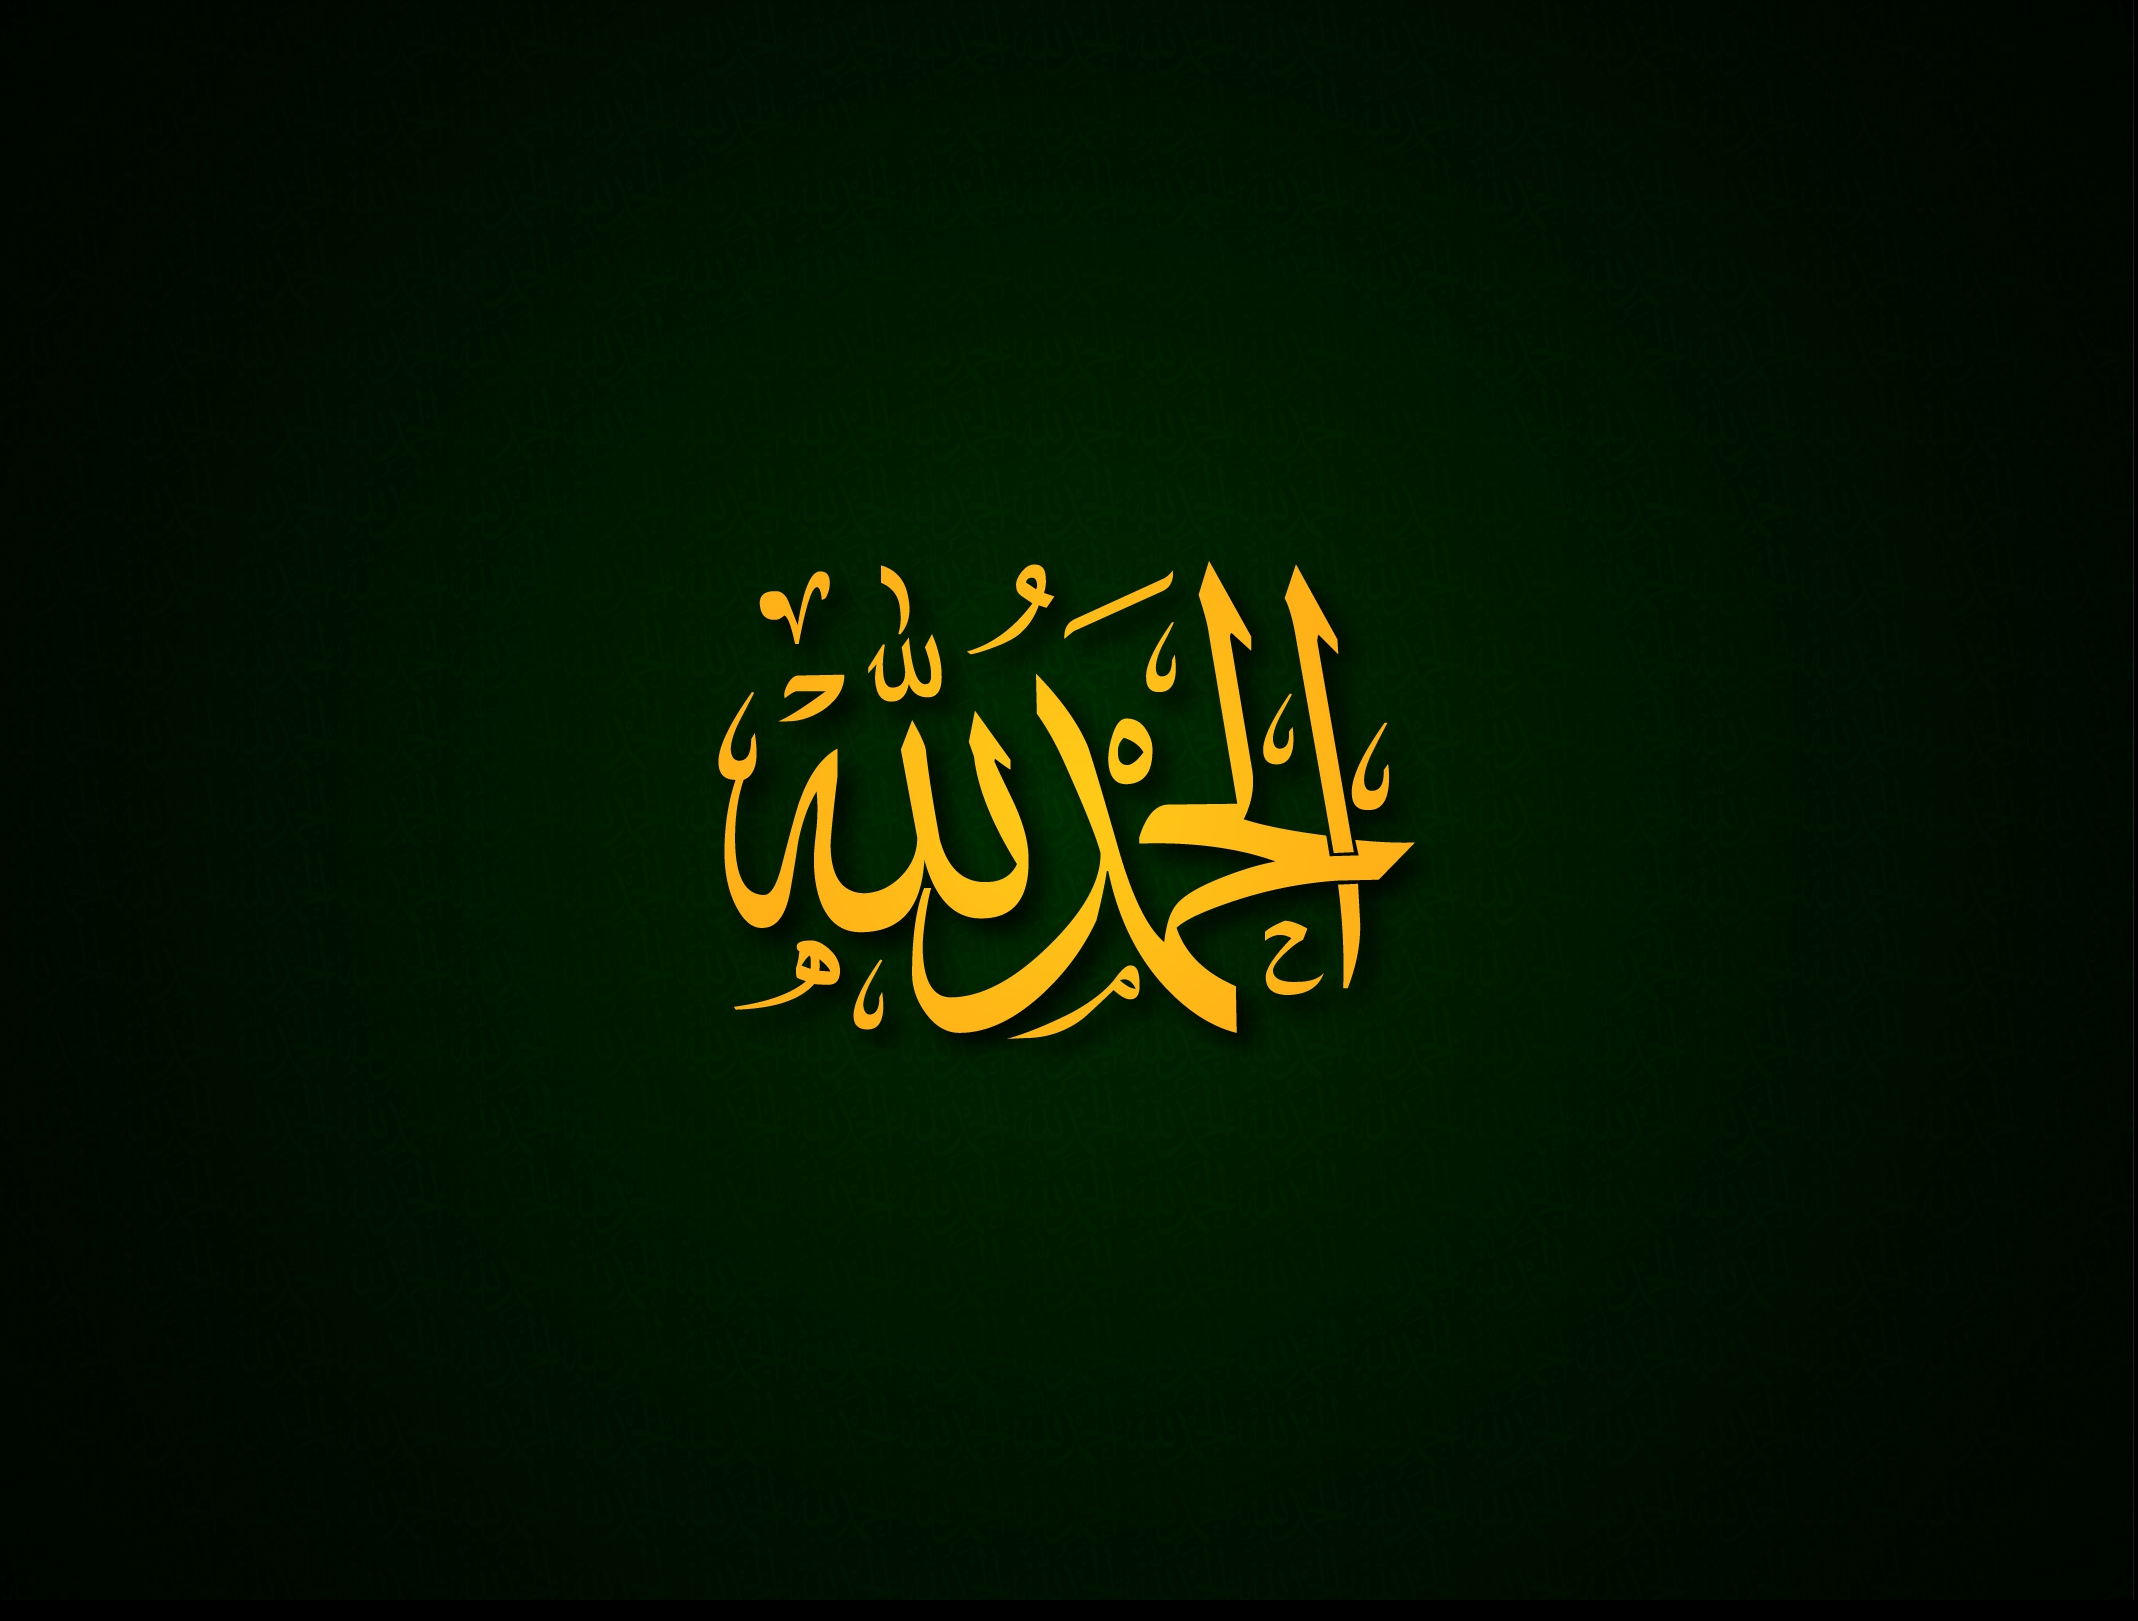 carta da parati islamica hd 1080p,testo,font,calligrafia,arte,grafica